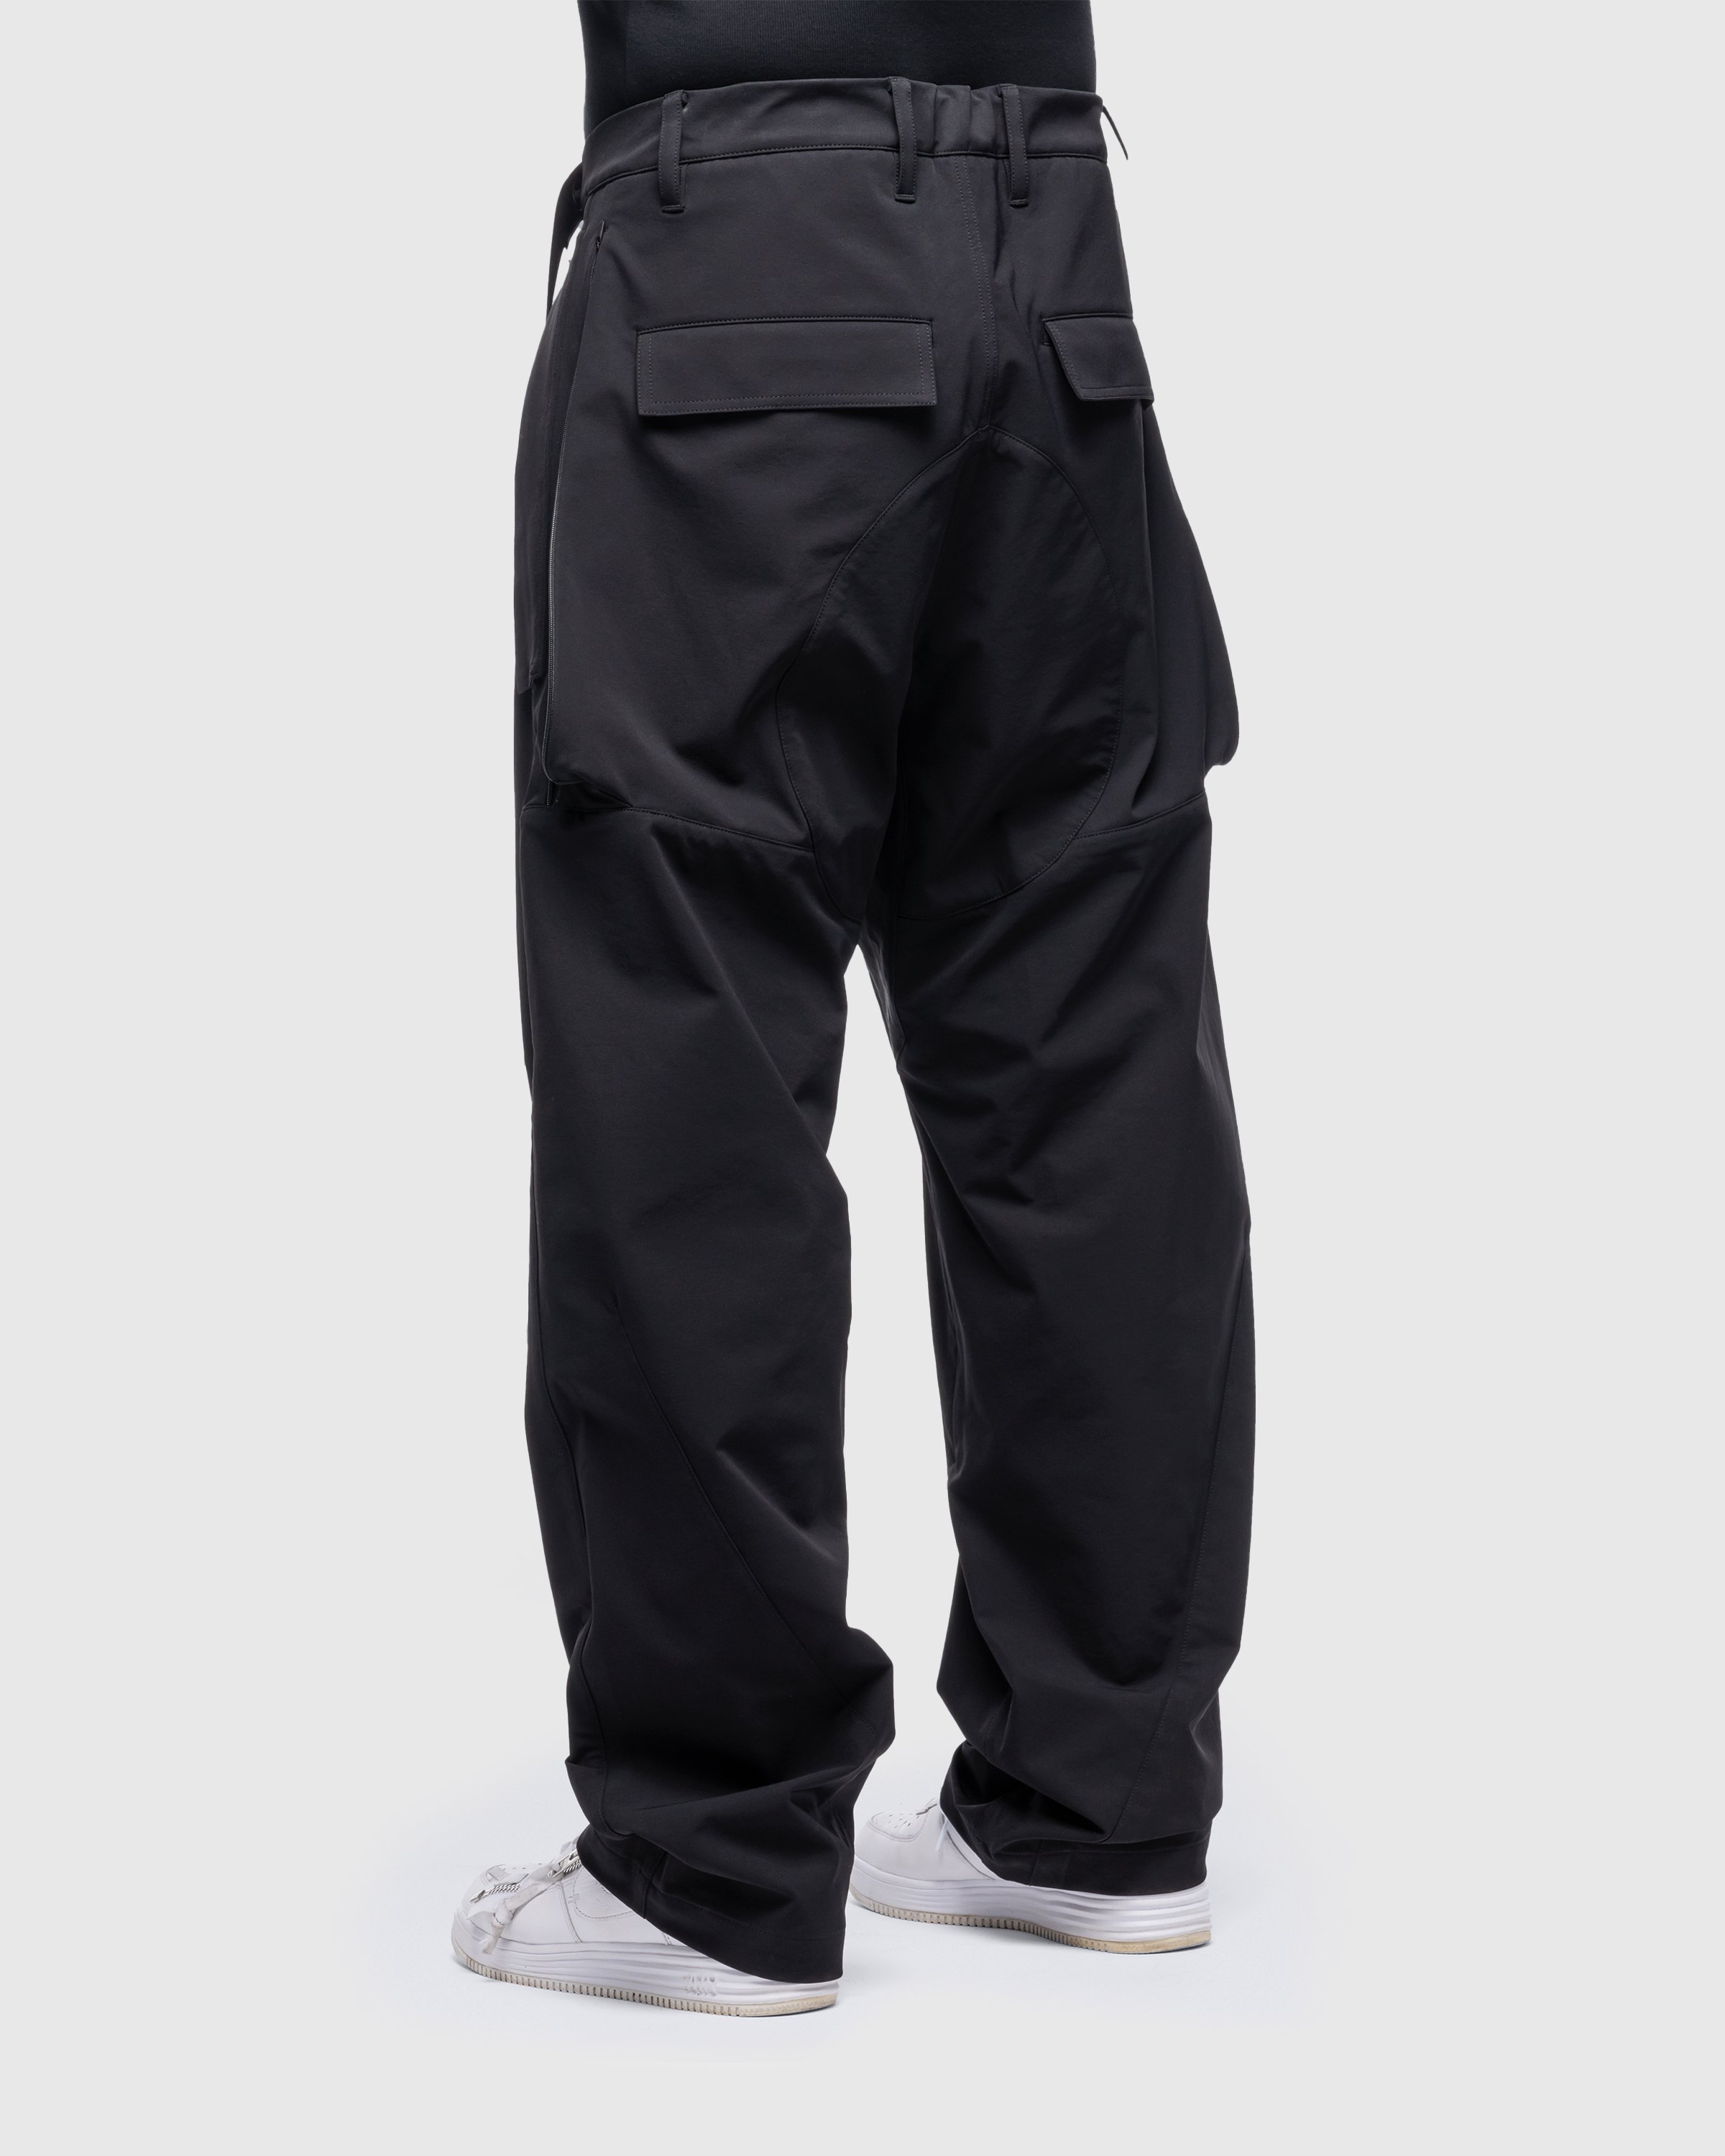 ACRONYM - P46-DS Schoeller Dryskin Vent Pants Black - Clothing - Black - Image 4